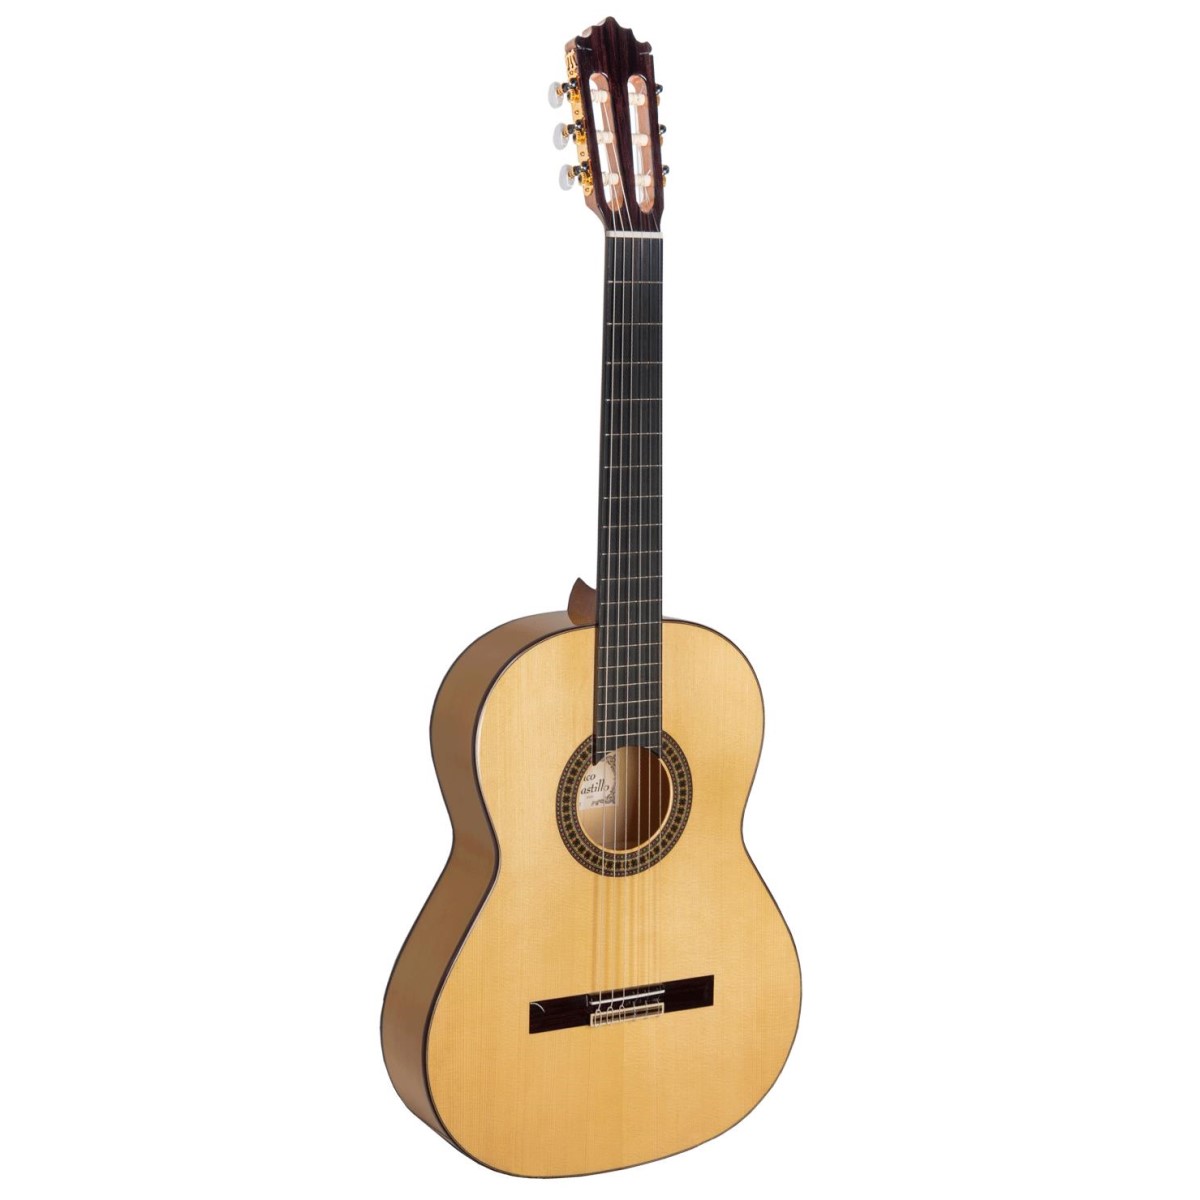 Comprar Guitarra Flamenca Paco Castillo al mejor precio en Prieto